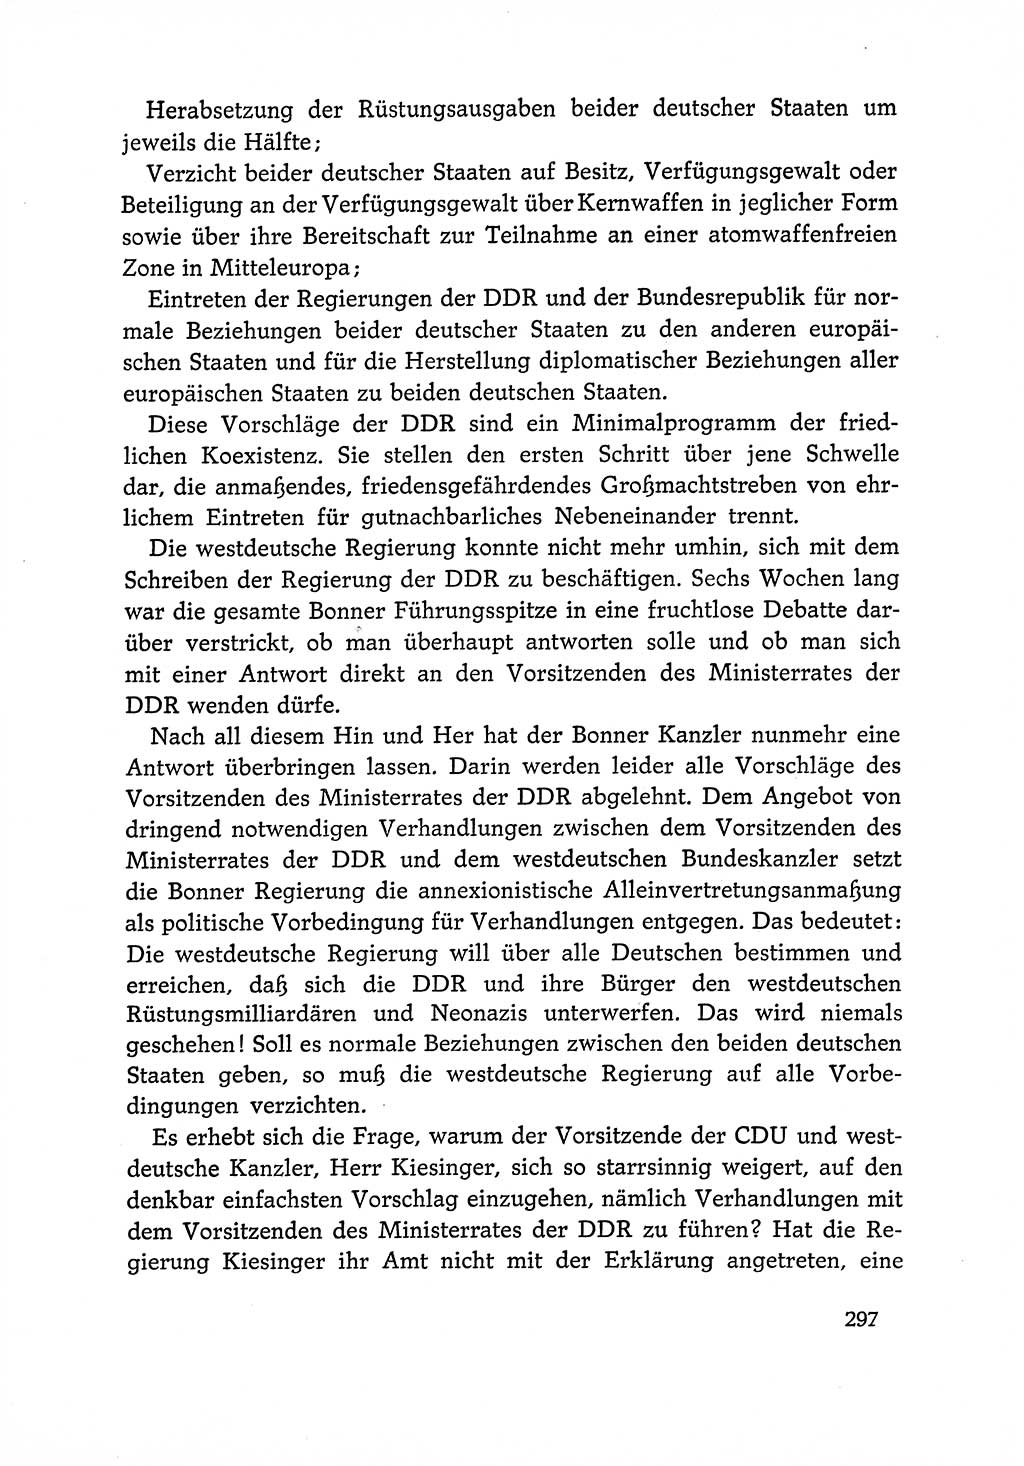 Dokumente der Sozialistischen Einheitspartei Deutschlands (SED) [Deutsche Demokratische Republik (DDR)] 1966-1967, Seite 297 (Dok. SED DDR 1966-1967, S. 297)